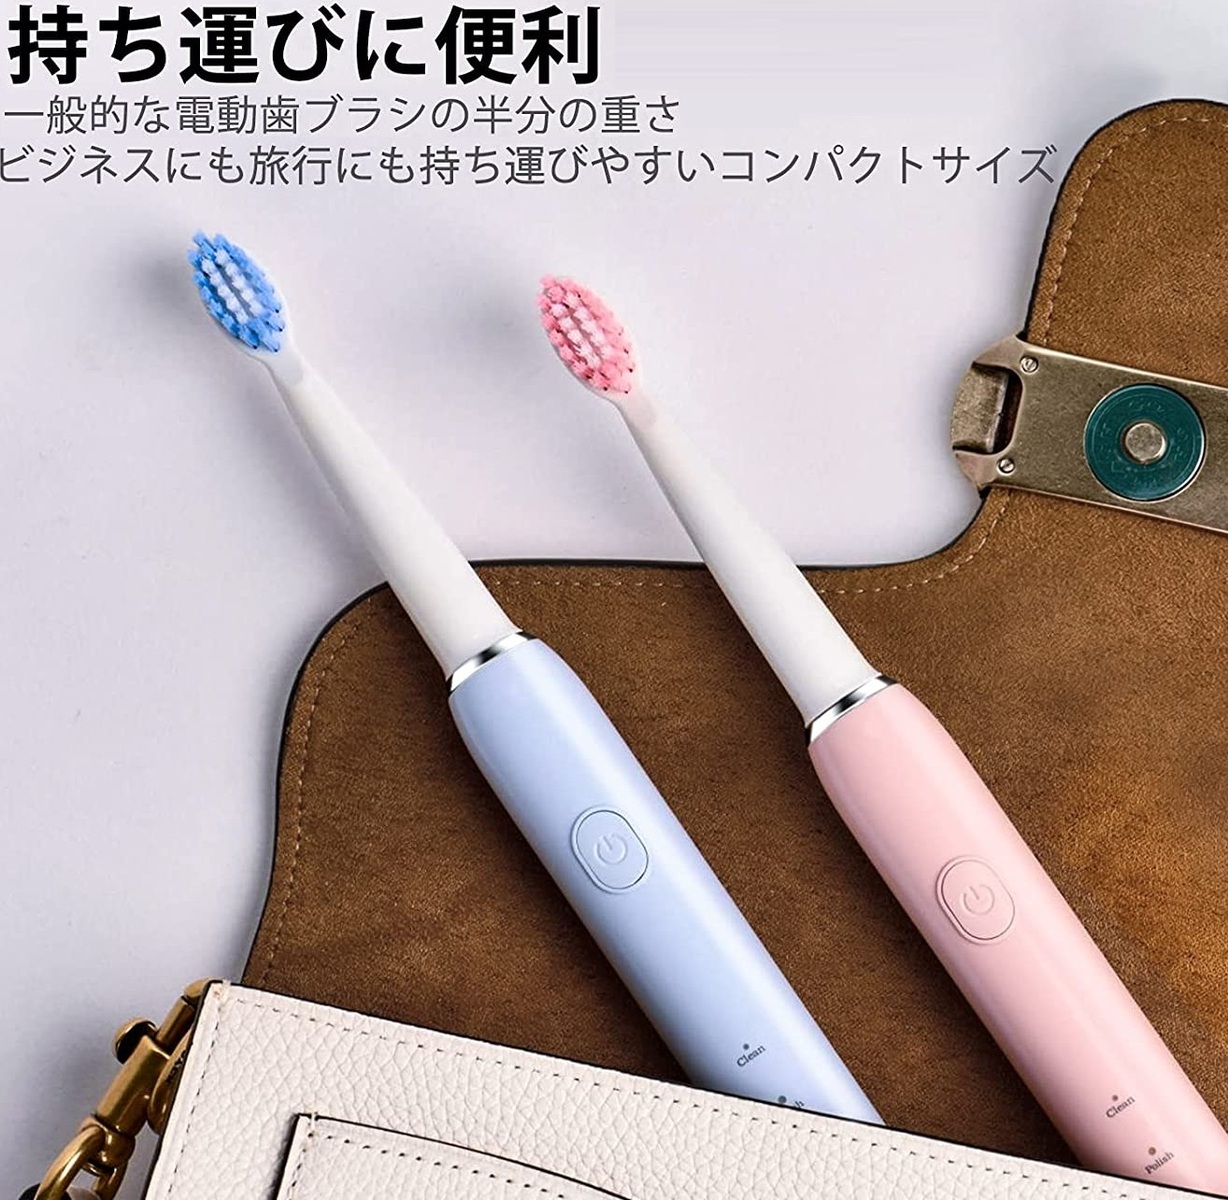 ⭐️大特価⭐️電動歯ブラシ 替えブラシつき 2本セット  ピンク